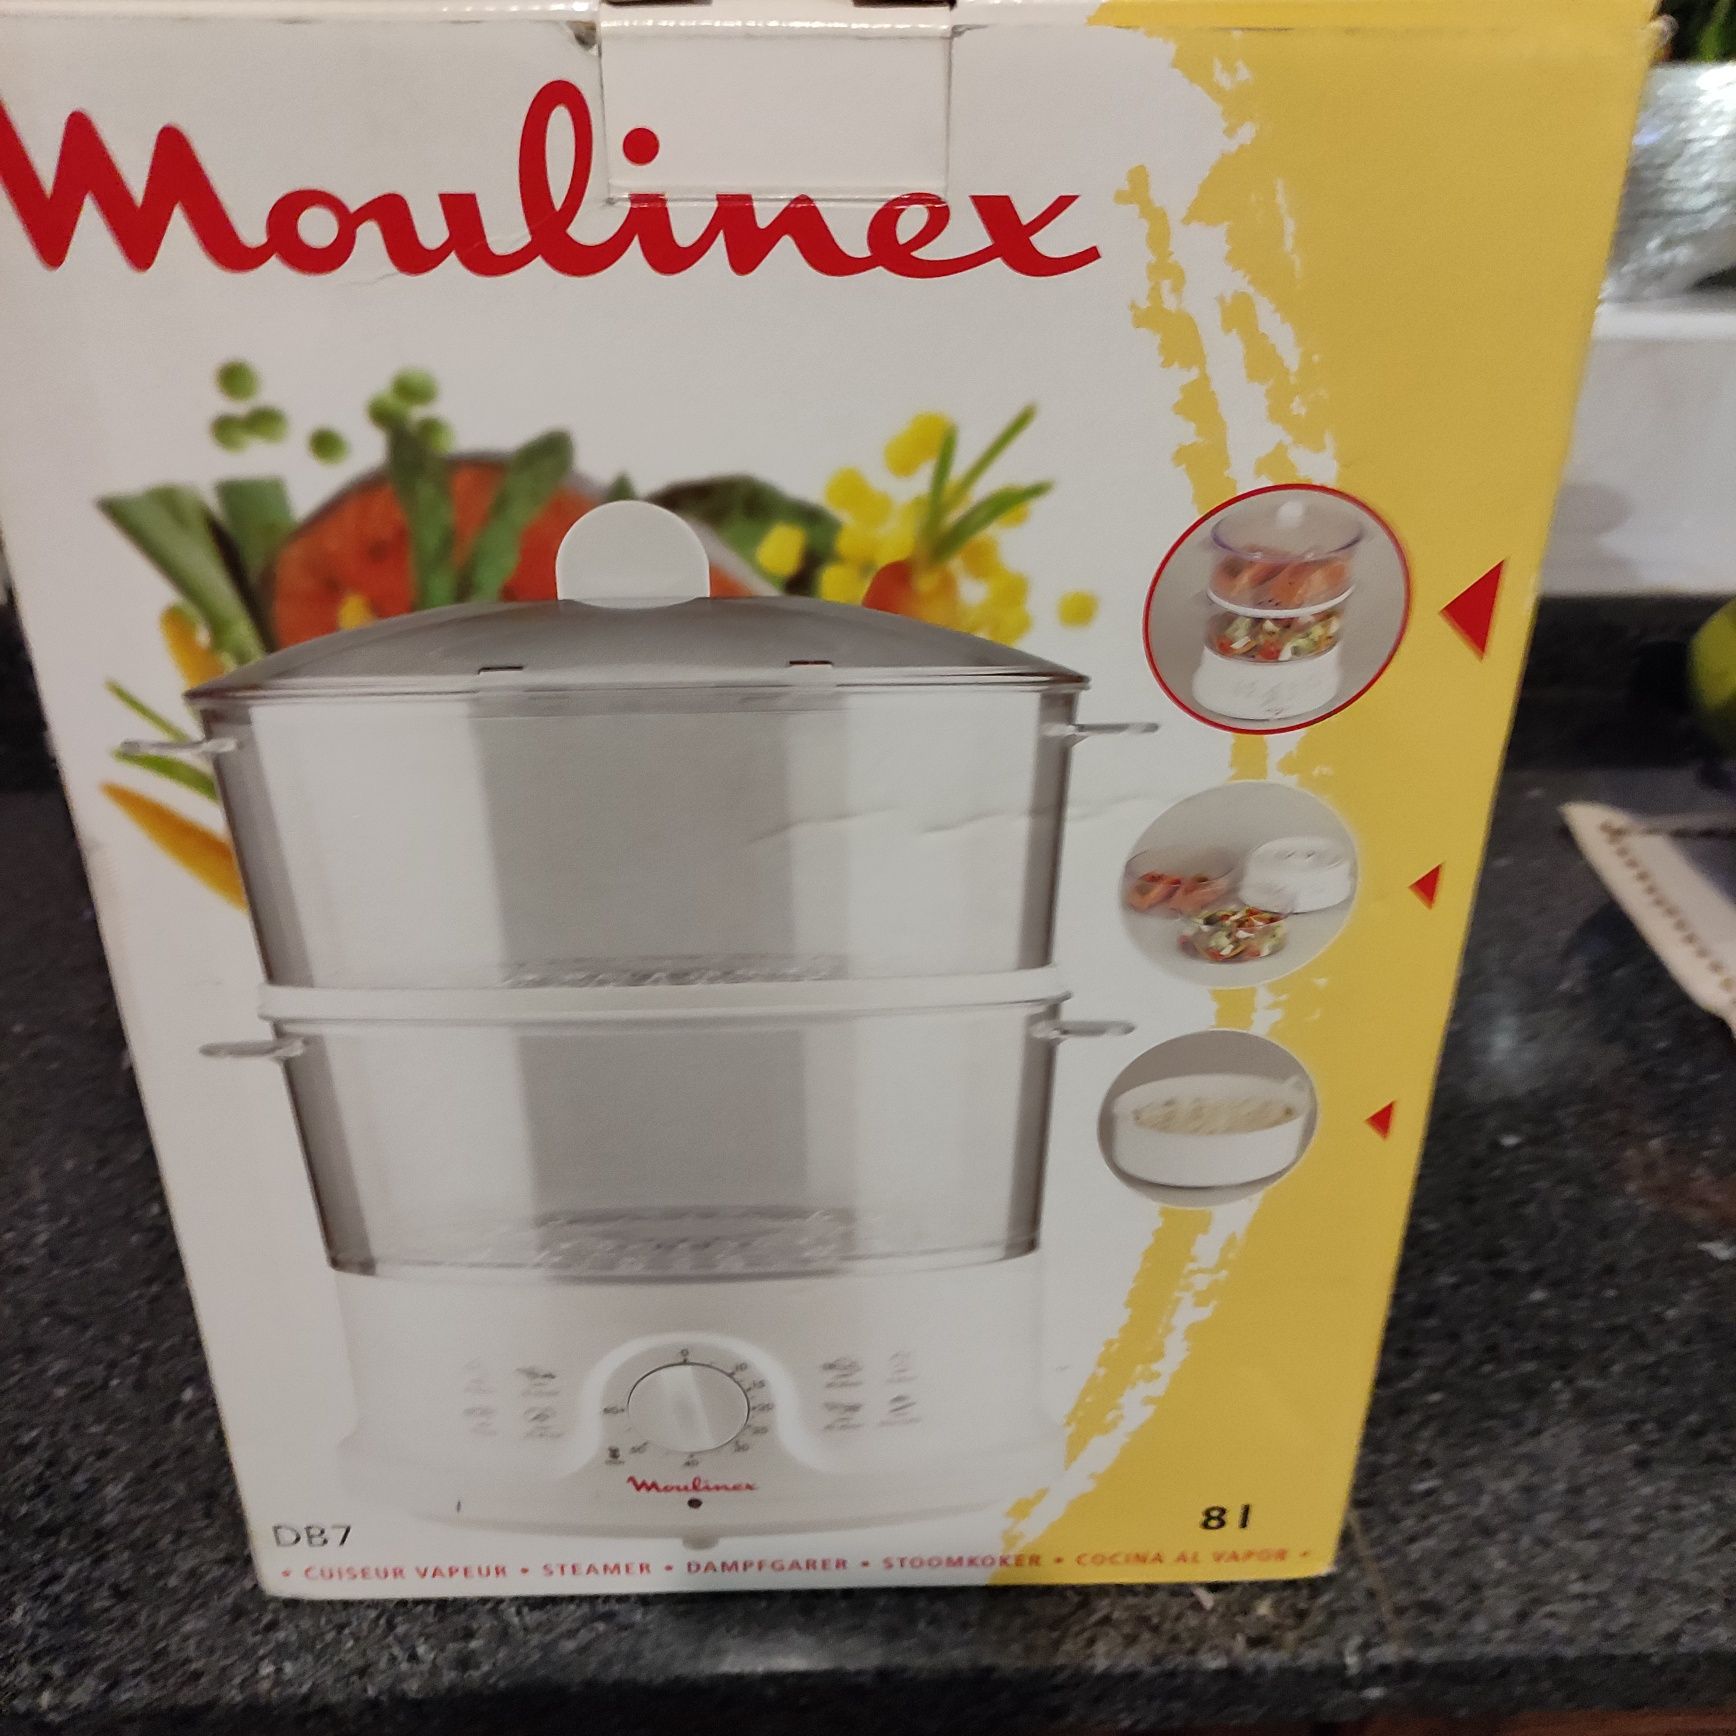 Vendo Robot de cozinhar a Vapor da marca Moulinex.